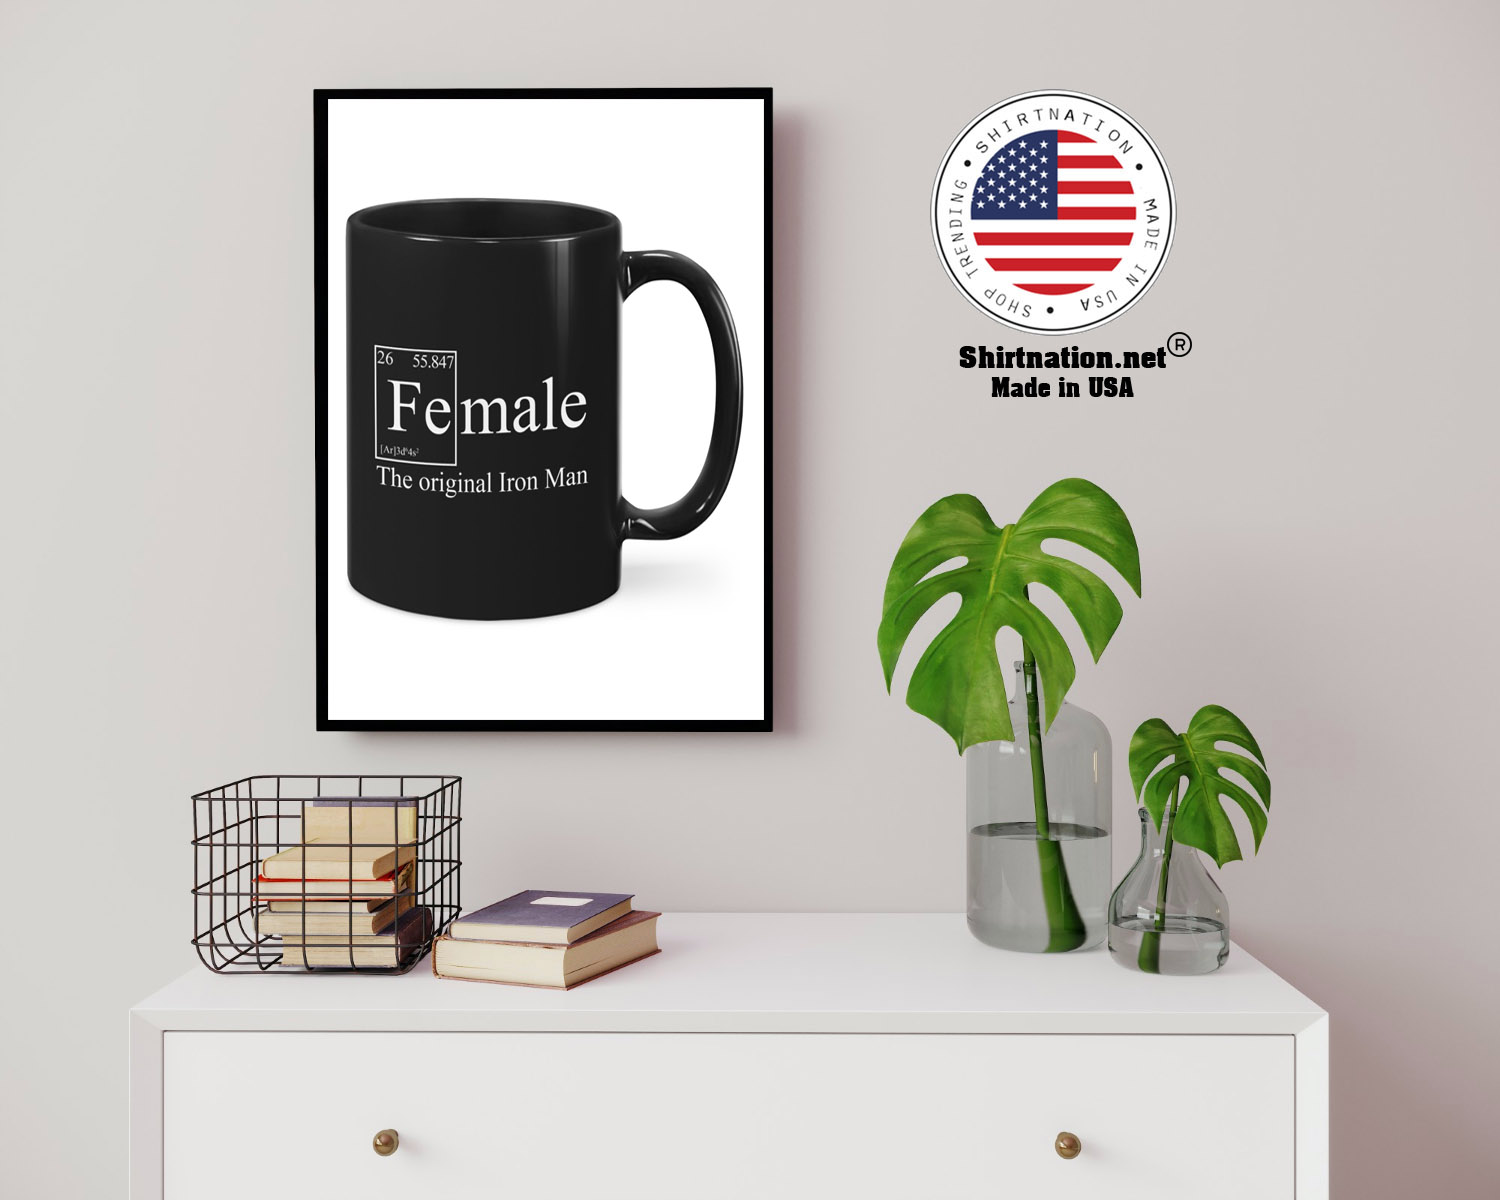 Female the original iron man mug 14 1